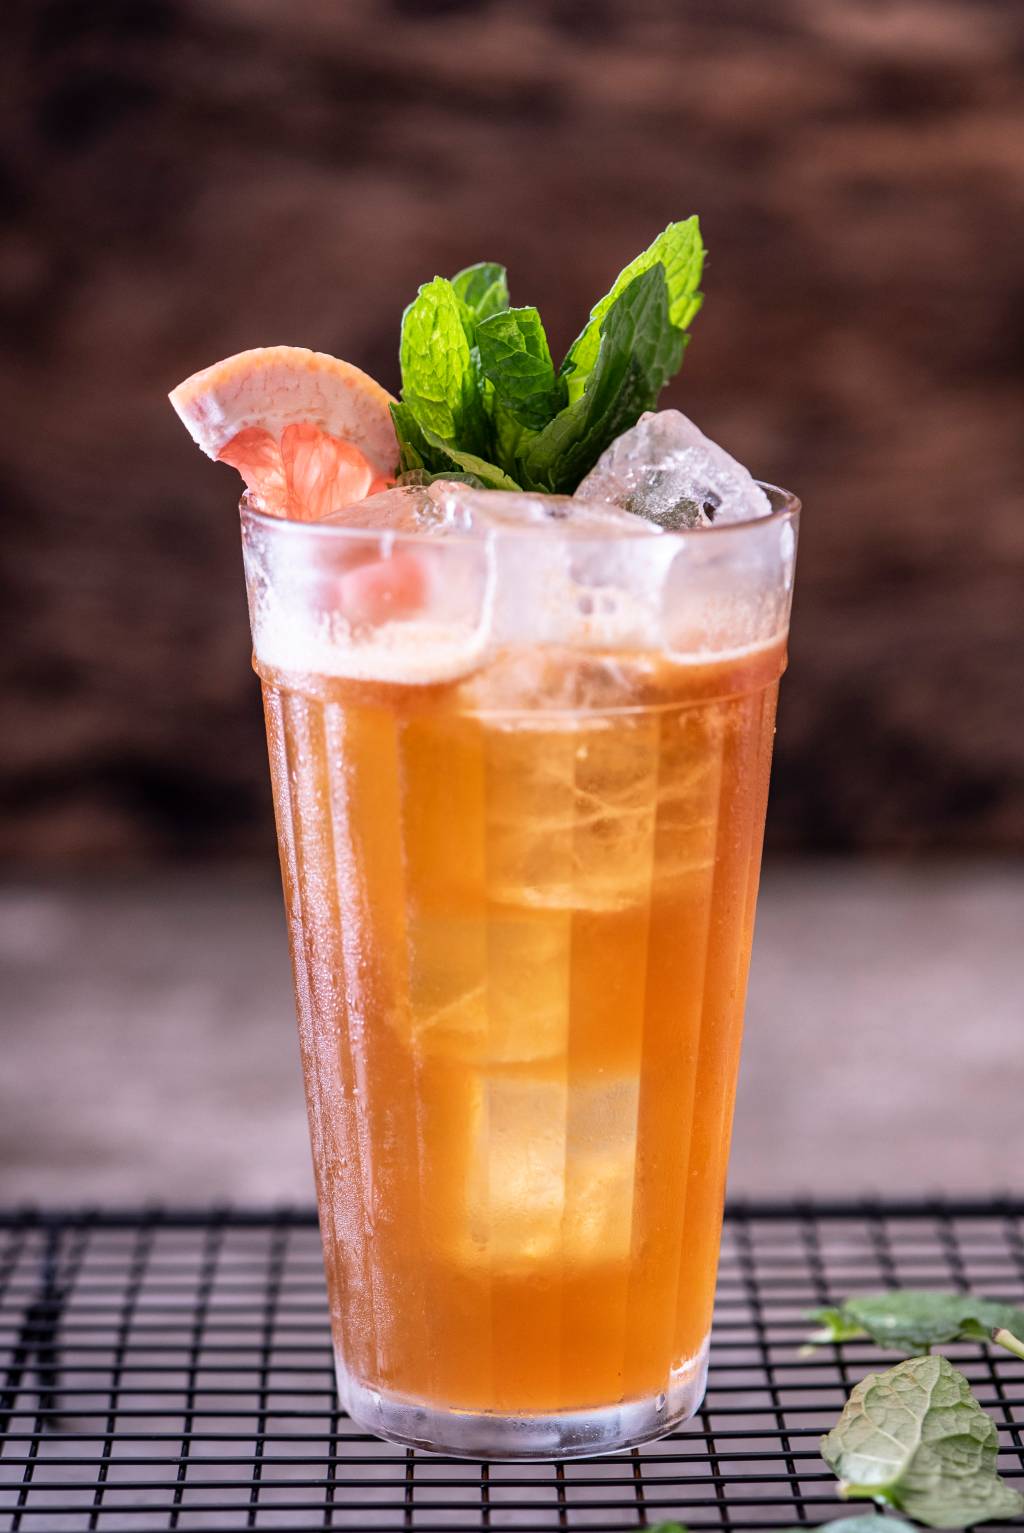 Drinque de cor alaranjada em copo tipo americano grande coberto por hortelã e fatia de laranja.